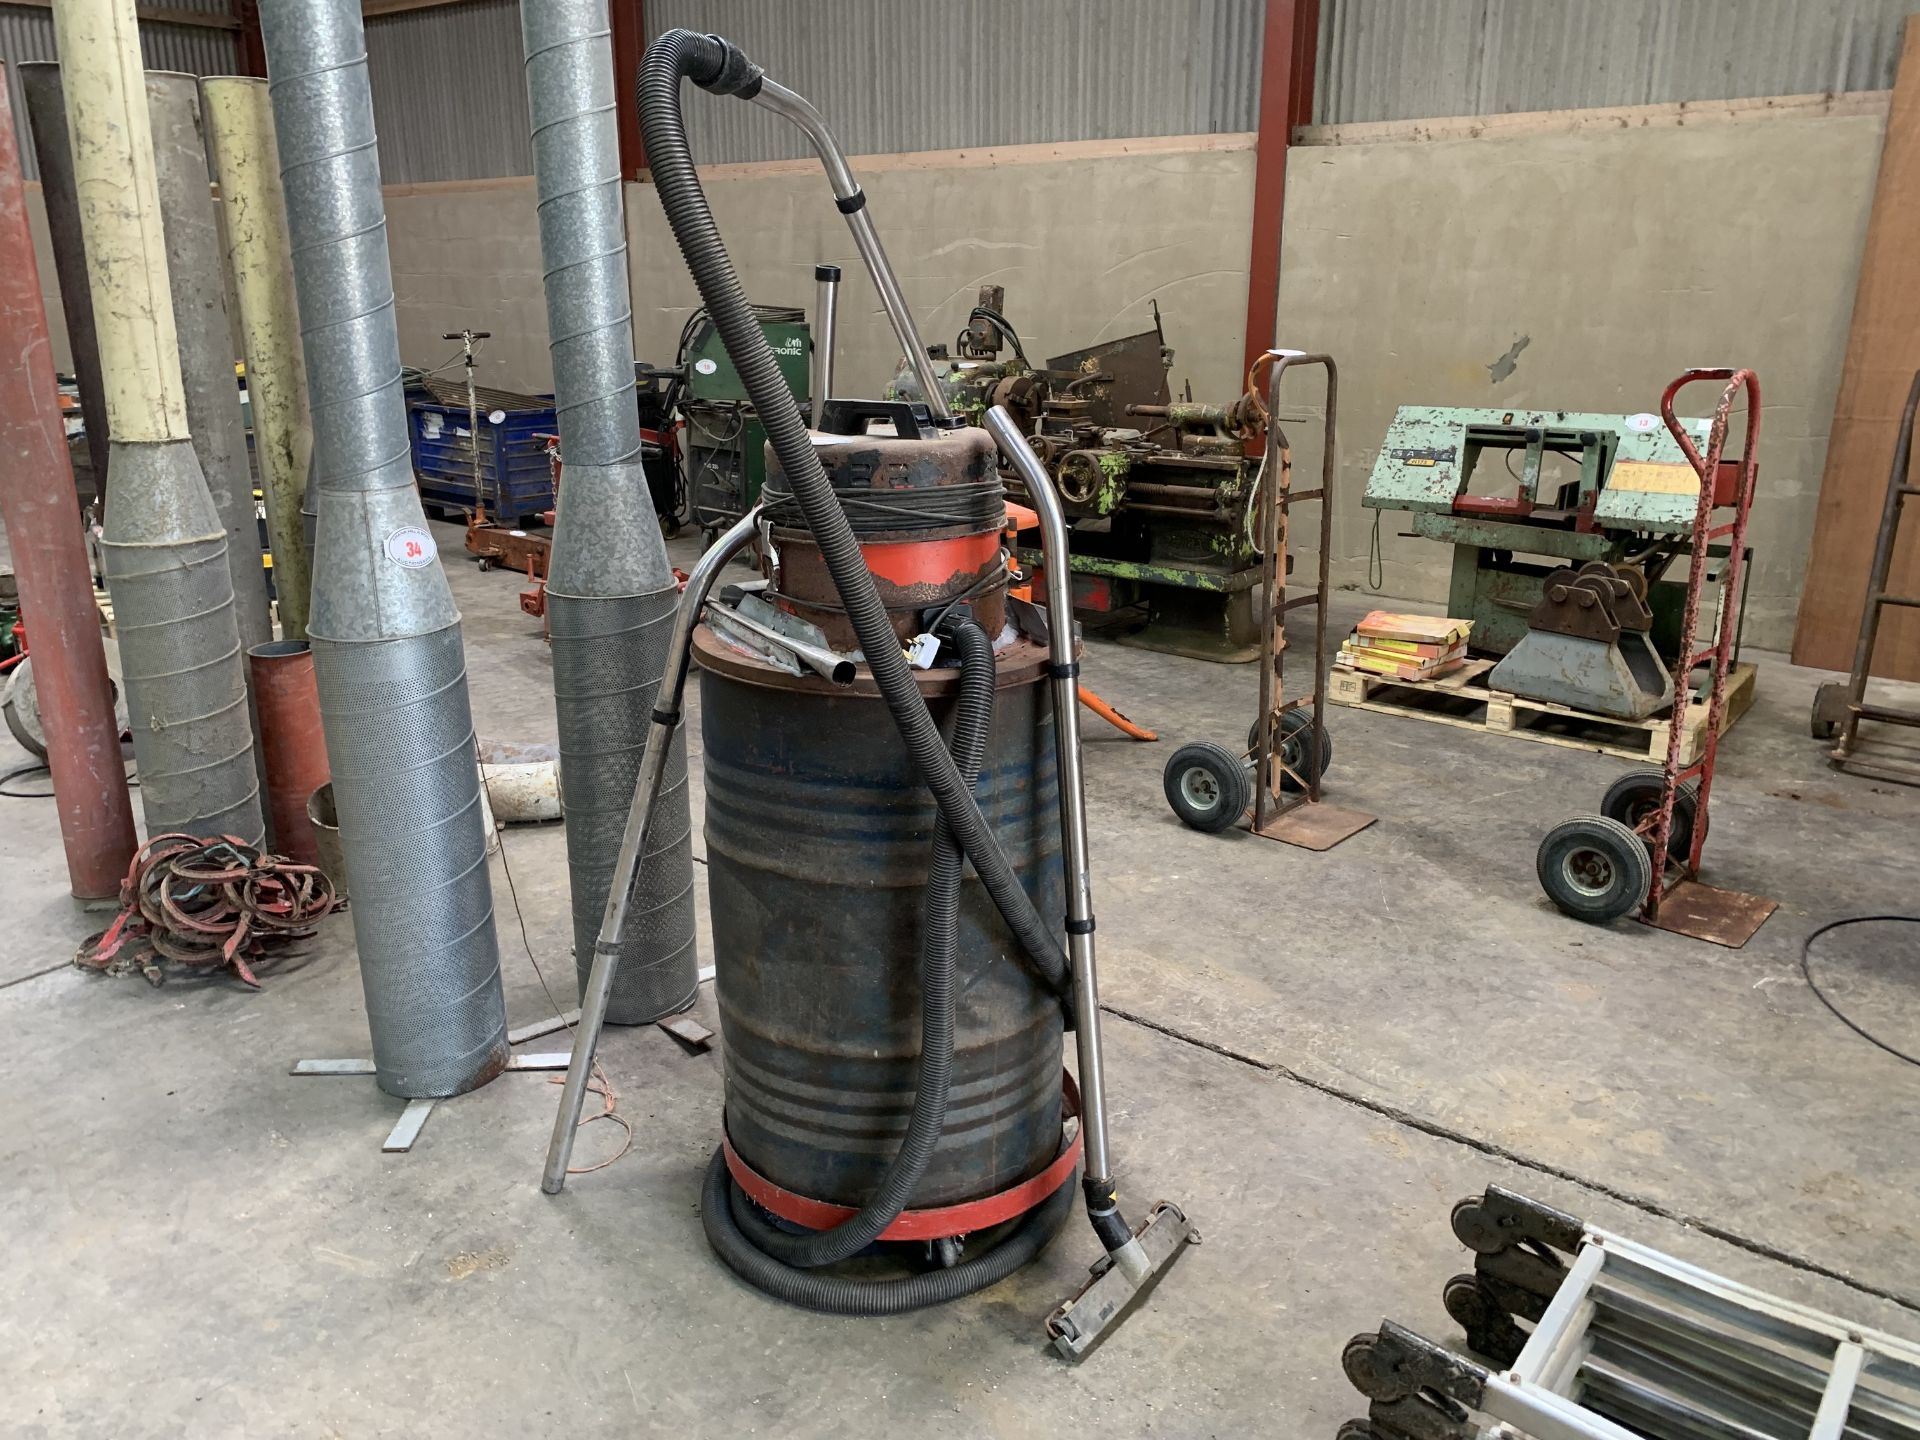 Oil barrel vacuum cleaner